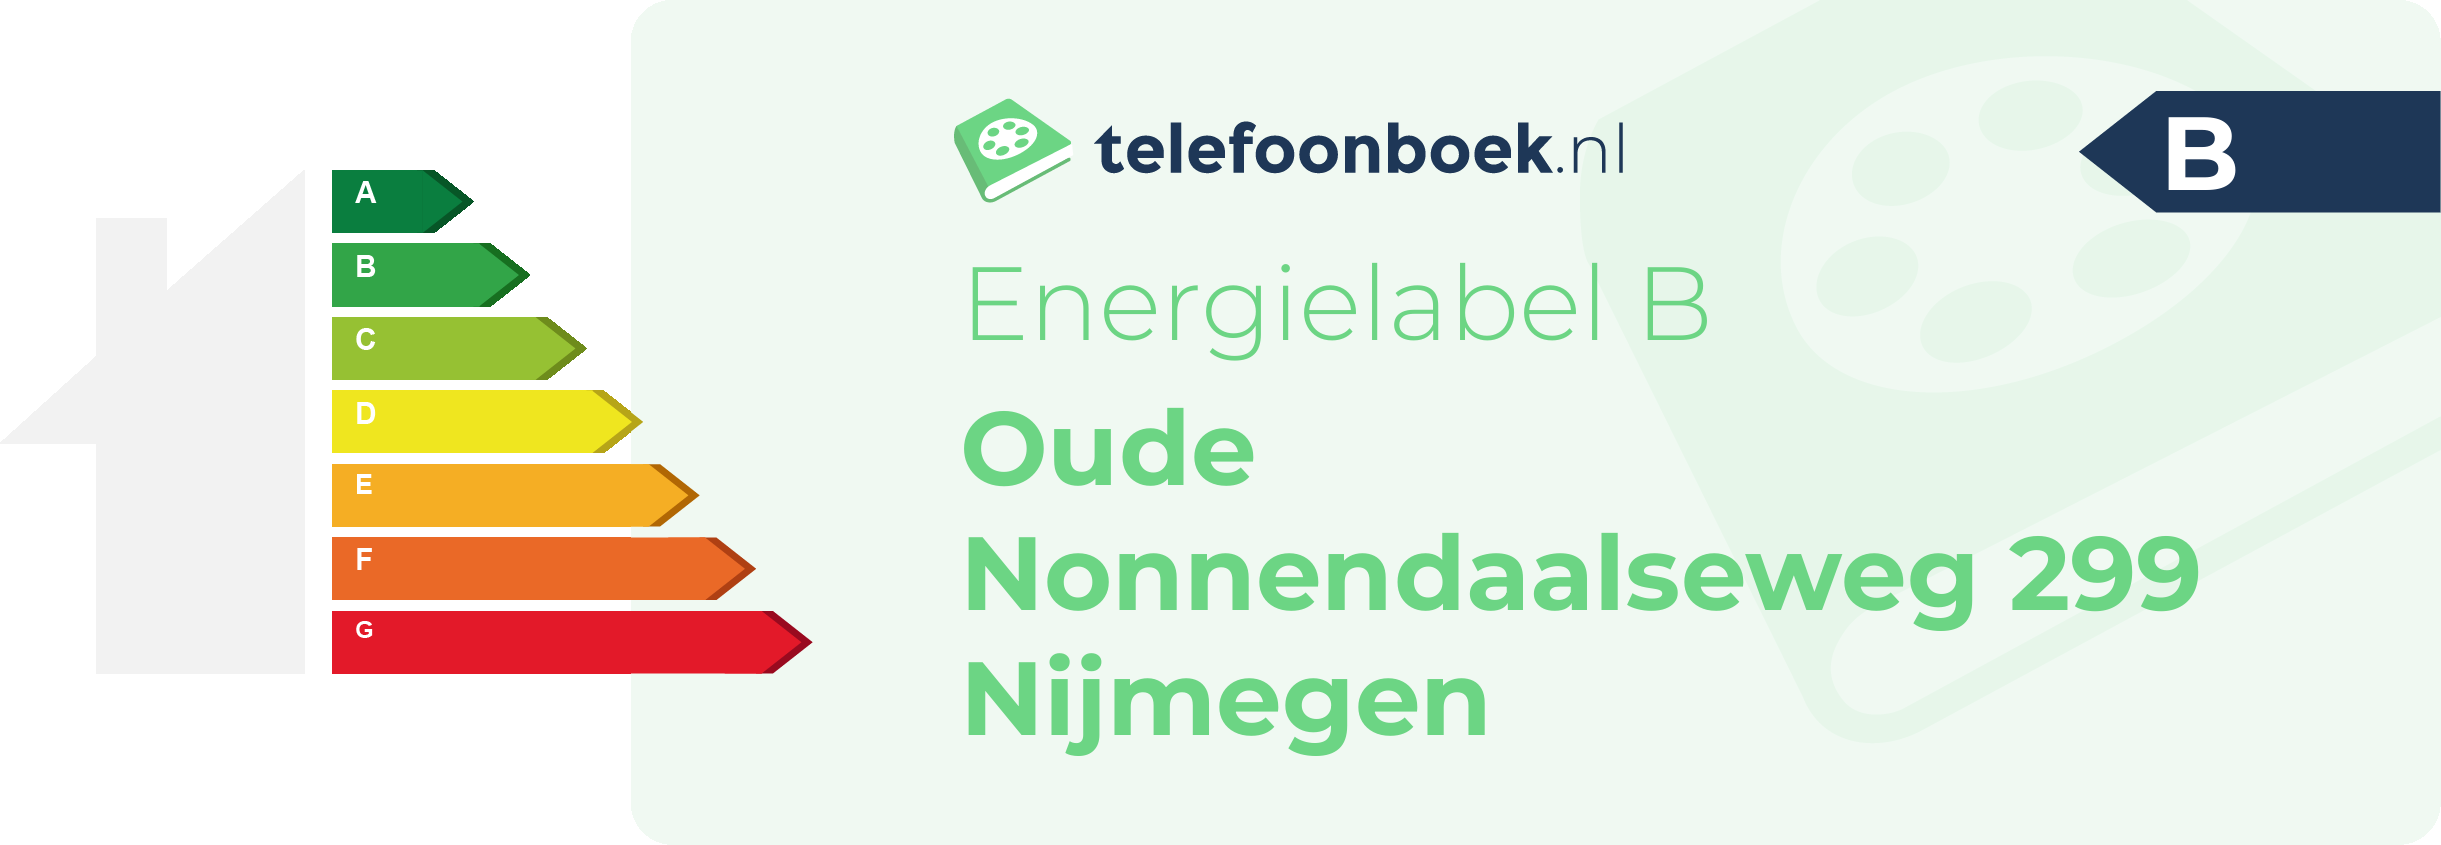 Energielabel Oude Nonnendaalseweg 299 Nijmegen